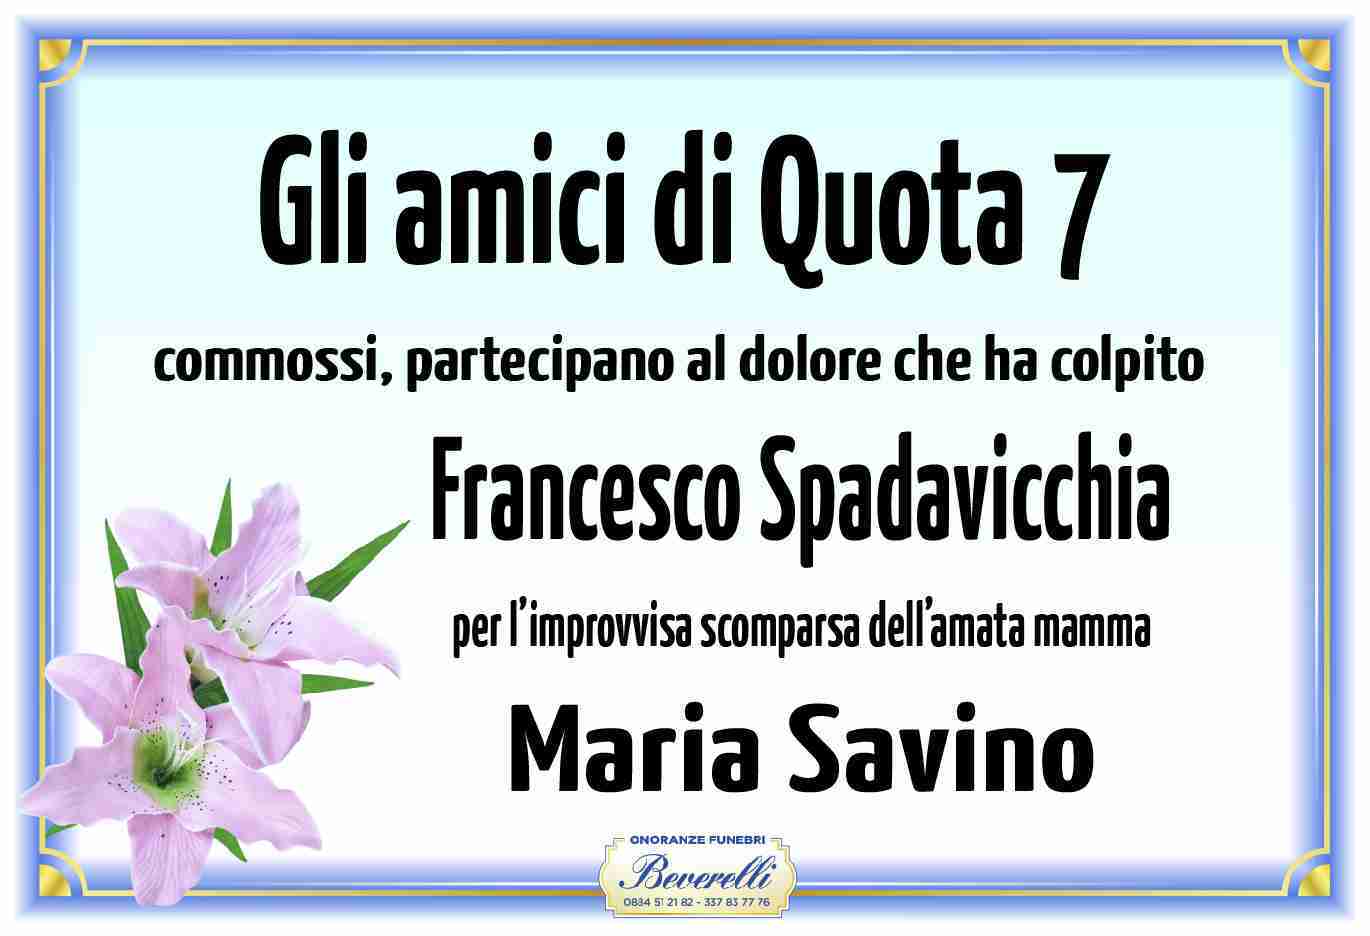 Maria Savino